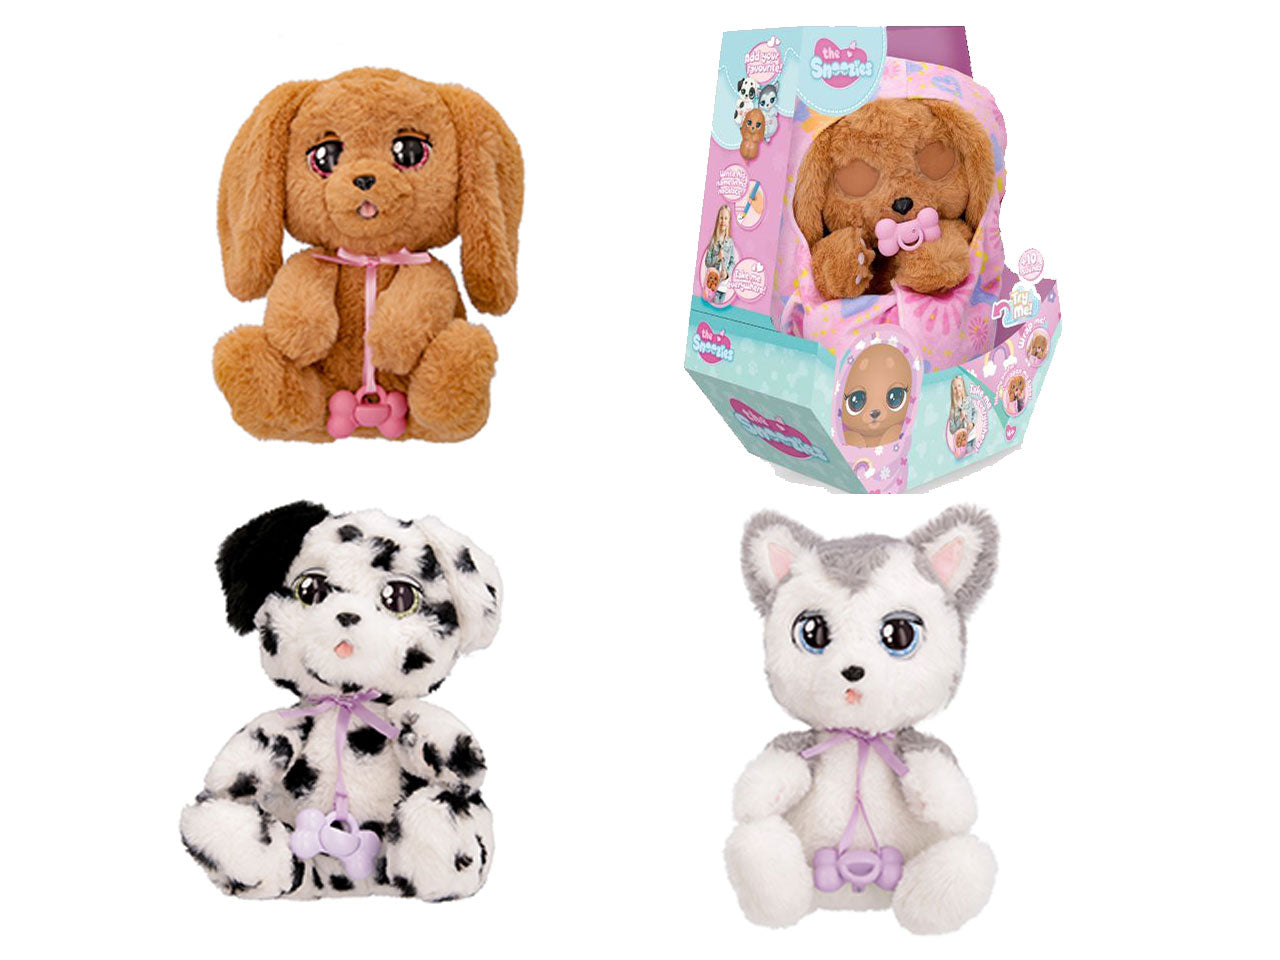 Cucciolo interattivo imc toys da bambina baby paws in 3 diversi assortimenti - la confezione contiene un ciuccio, una culla e una coperta-borsetta$